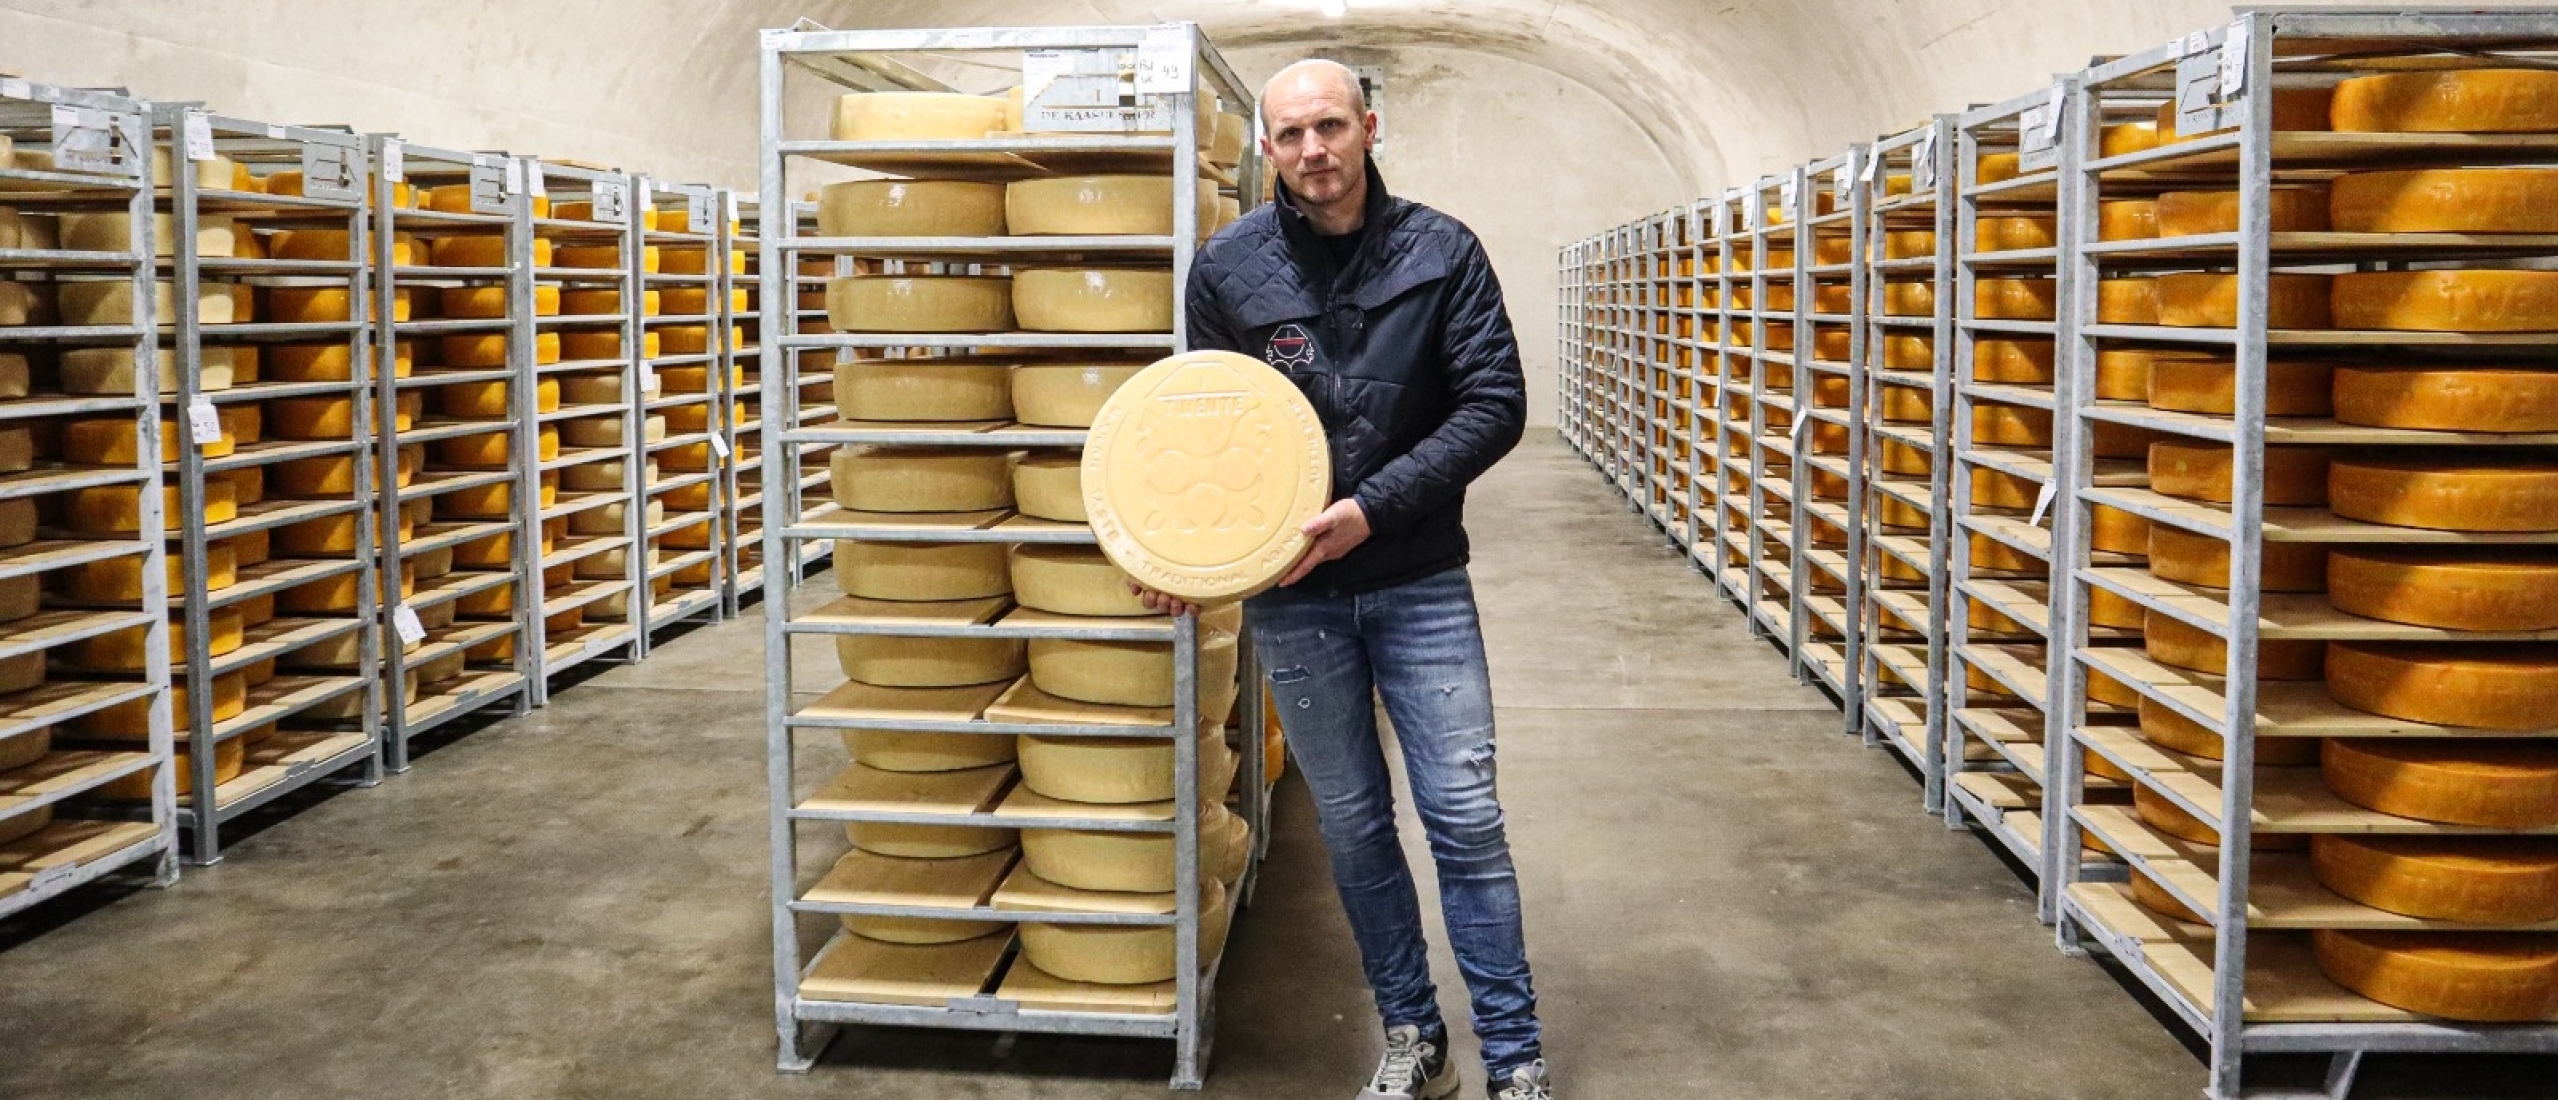 Uitgeroepen tot #5 lekkerste kaas van de wereld bij de World Cheese Awards